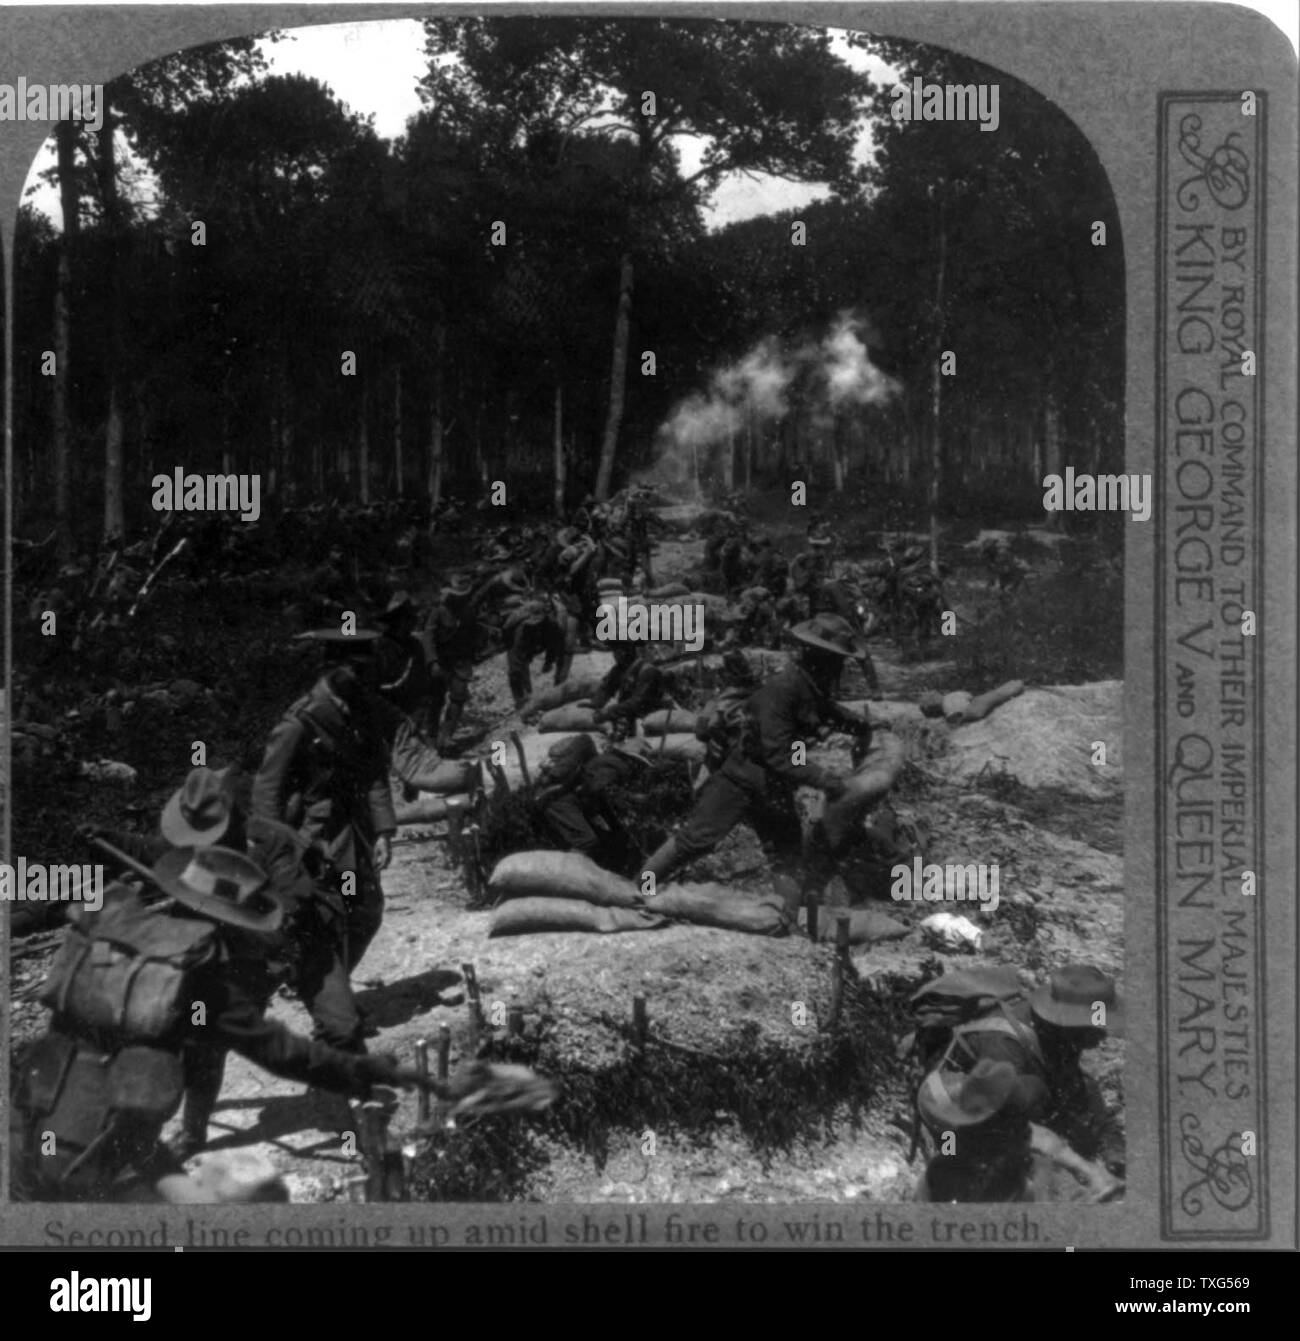 Zweite Zeile oben kommen unter shell Feuer einen Graben zu gewinnen. Britische Soldaten im Ersten Weltkrieg Stockfoto